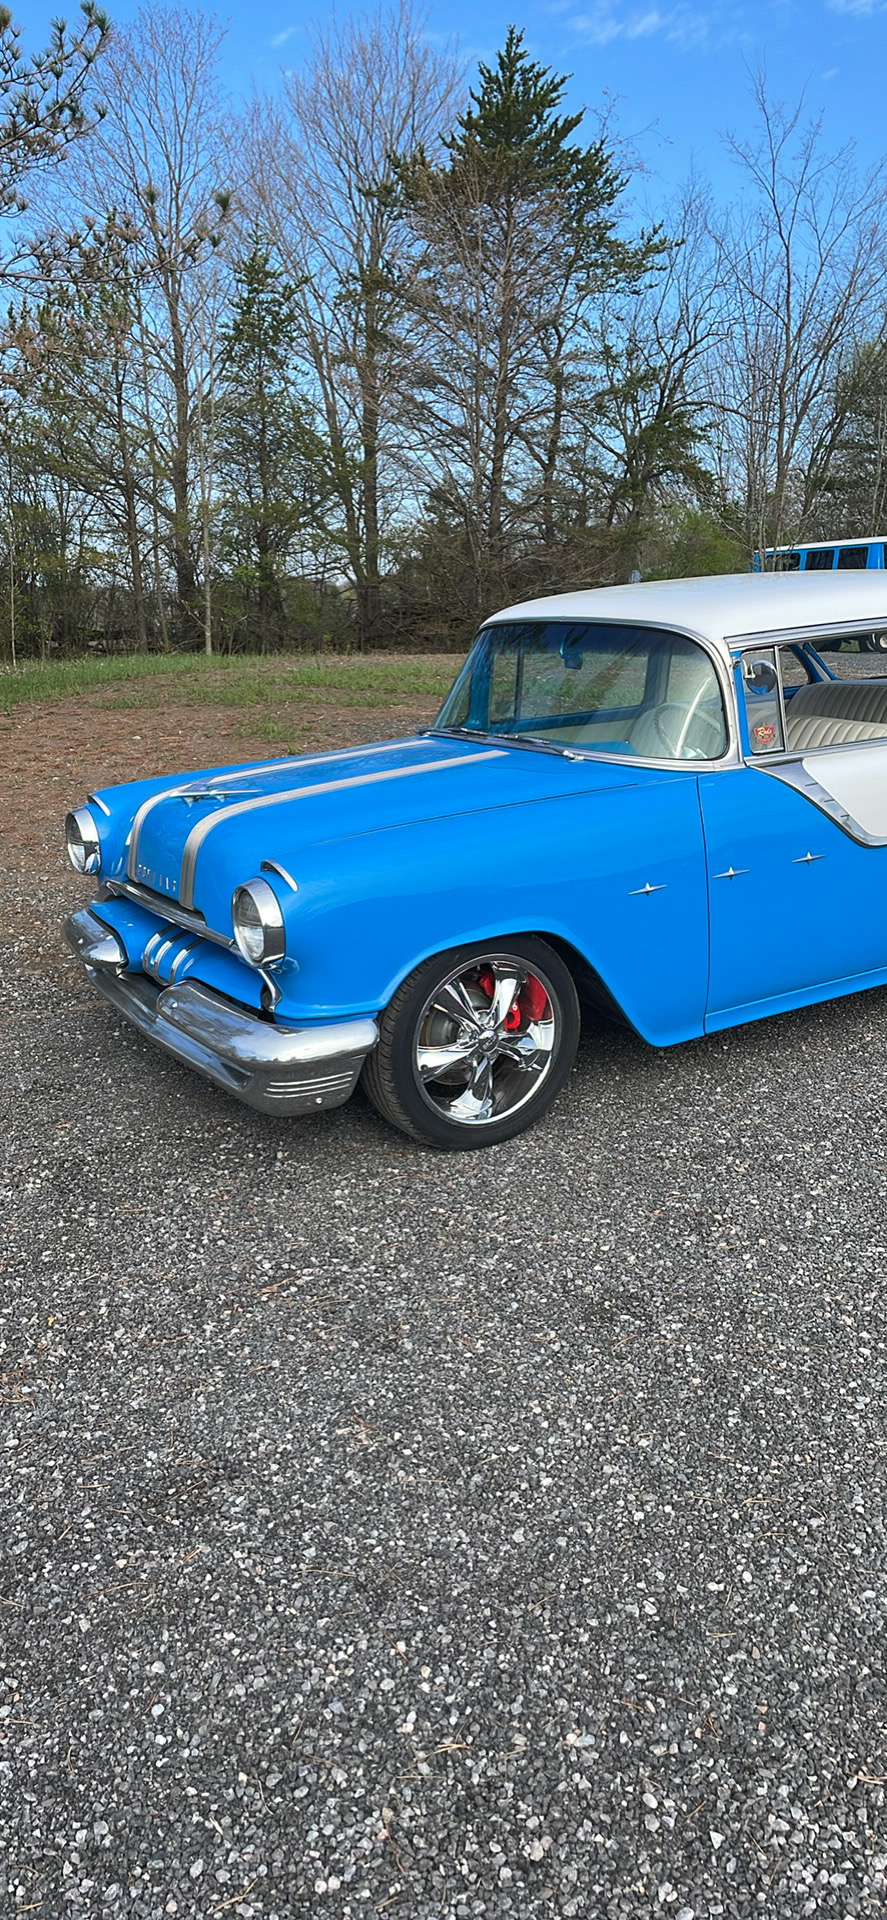 1955 Pontiac